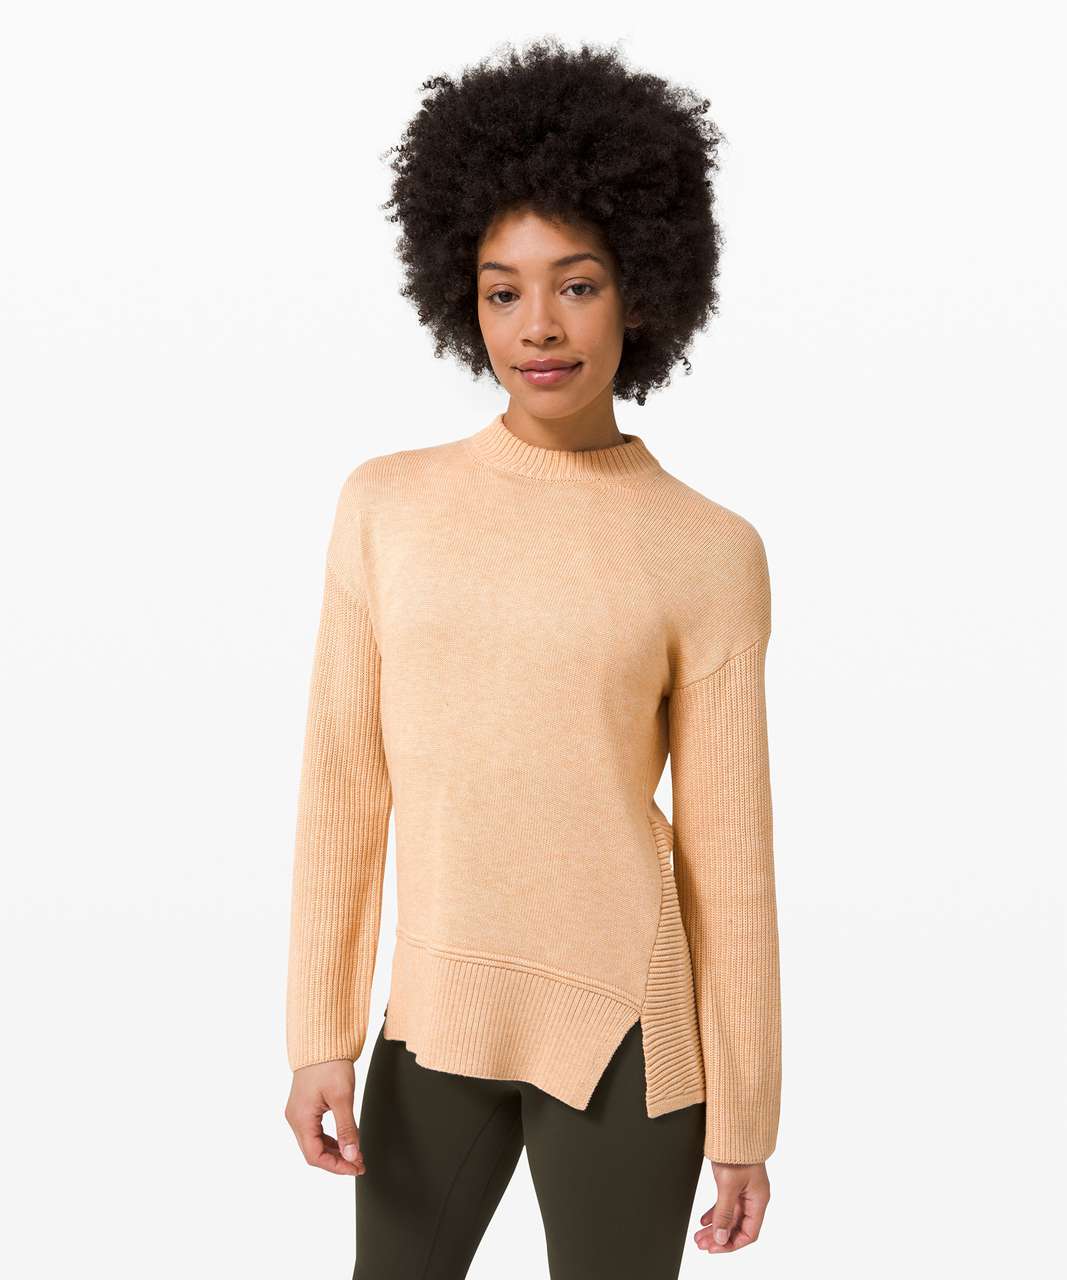 Lululemon Total Ellipse Sweater - Heathered Ivory Peach